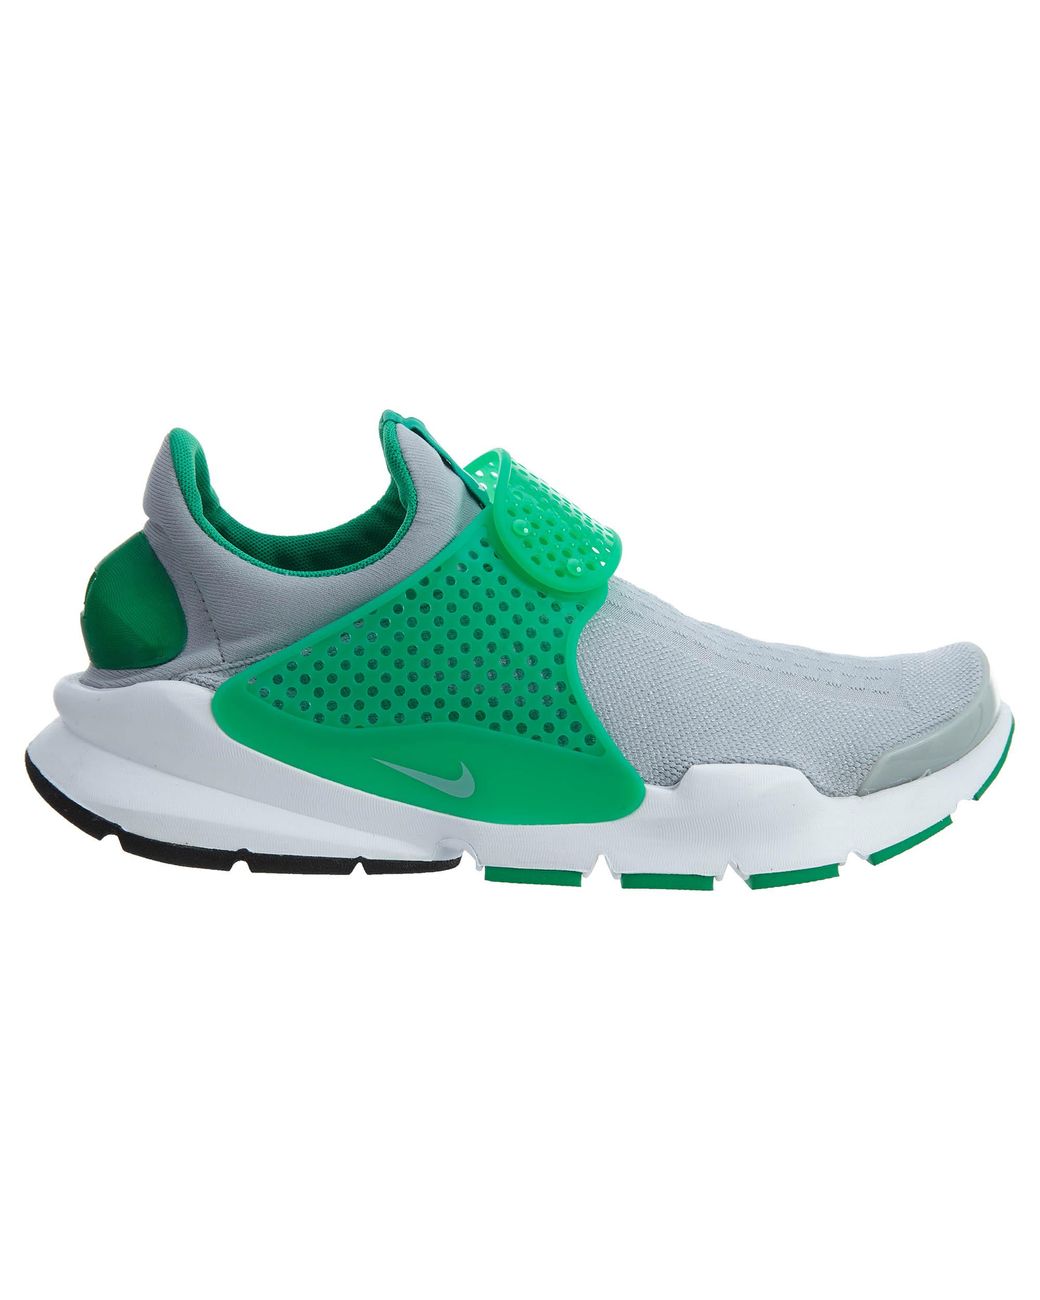 Nike Sock Dart Kjcrd in 12 (Green) for Men - Save 9% - Lyst